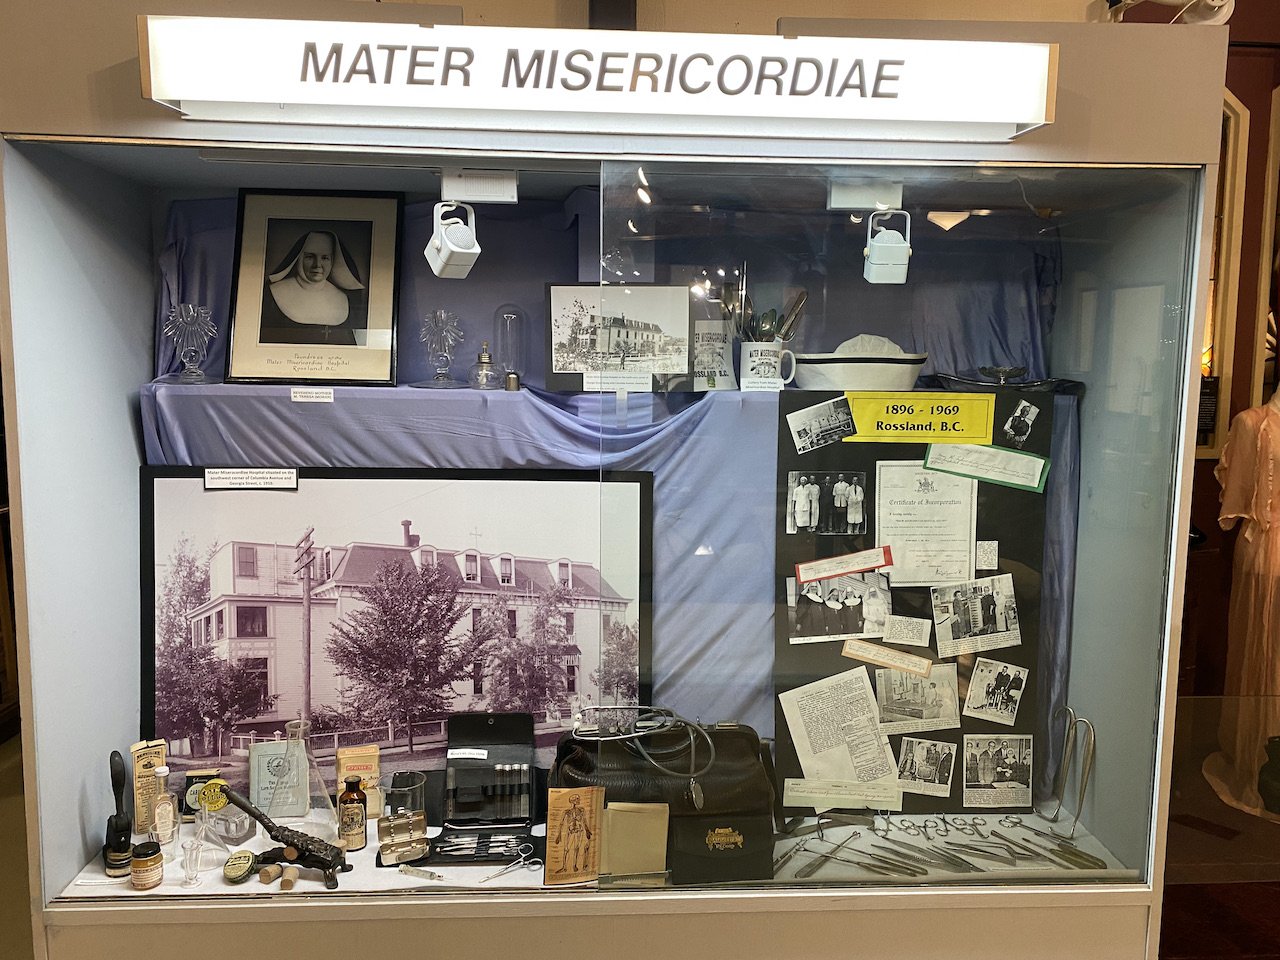  Mater Misericordiae Exhibit (Previous) 